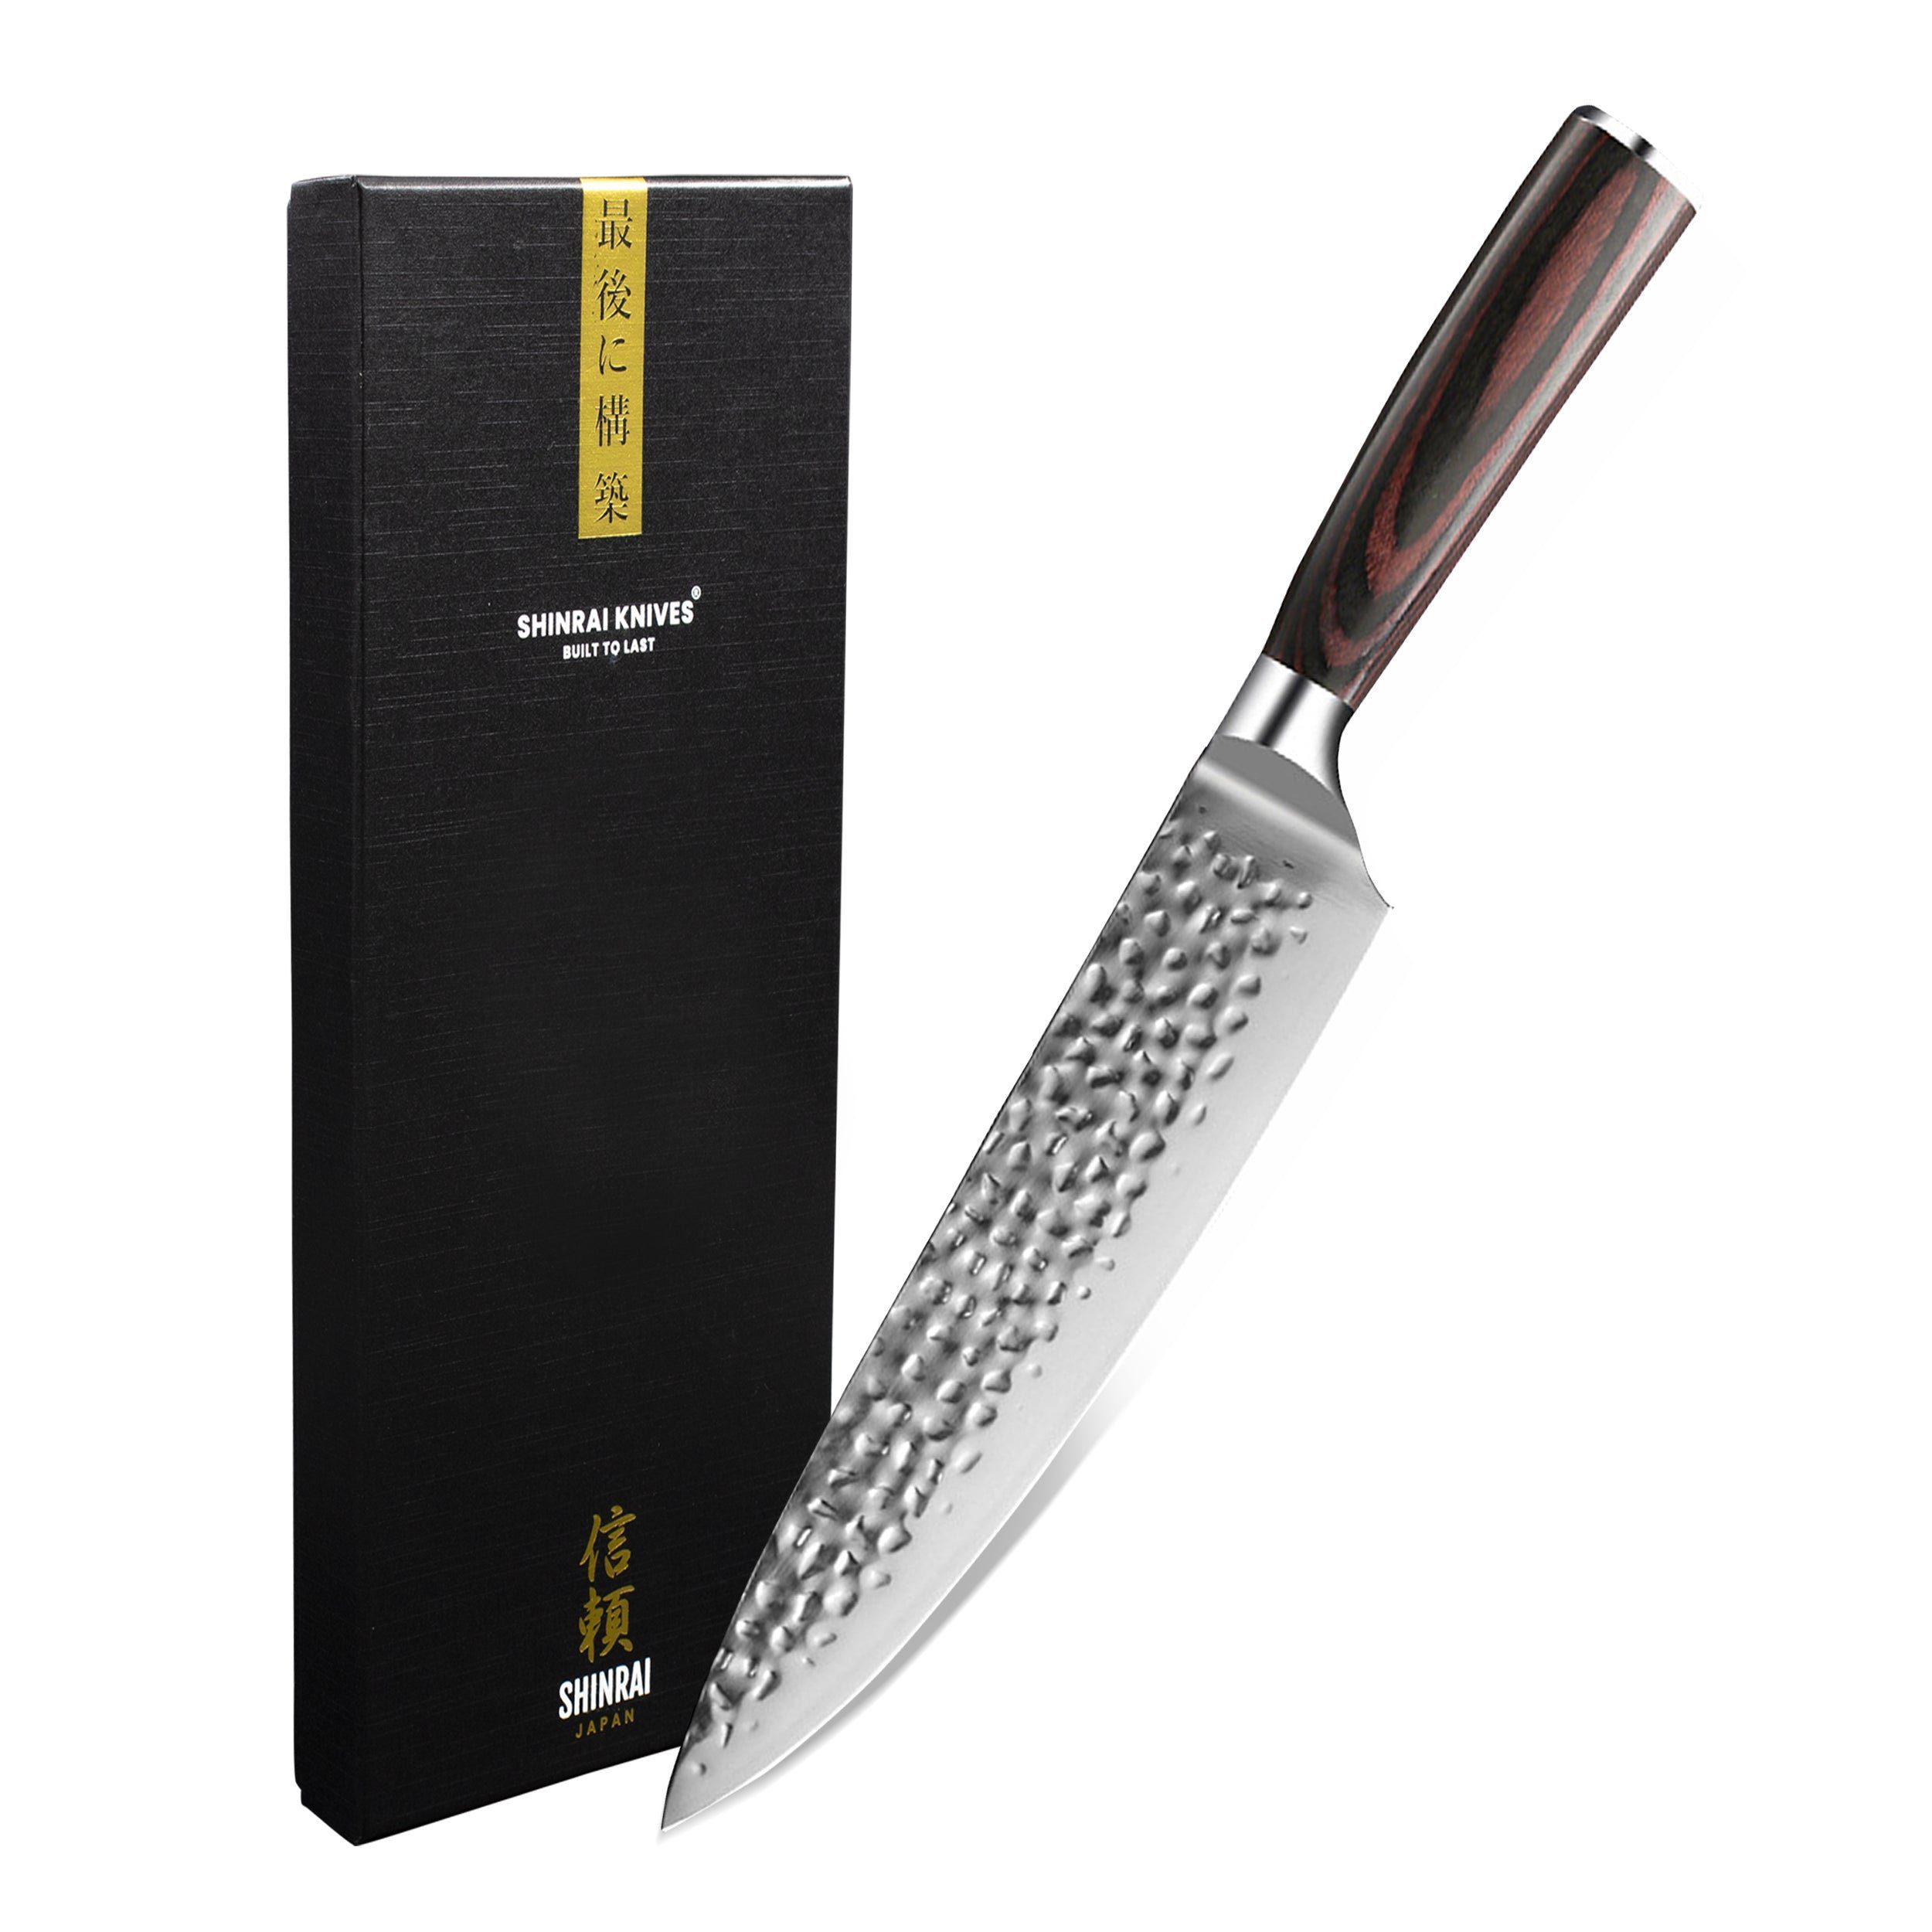 Shinrai Japan Damastmesser cm ins bis Kochmesser 20 Edelstahl, Detail - Handgefertigt Gehämmertes Messer Japanisches